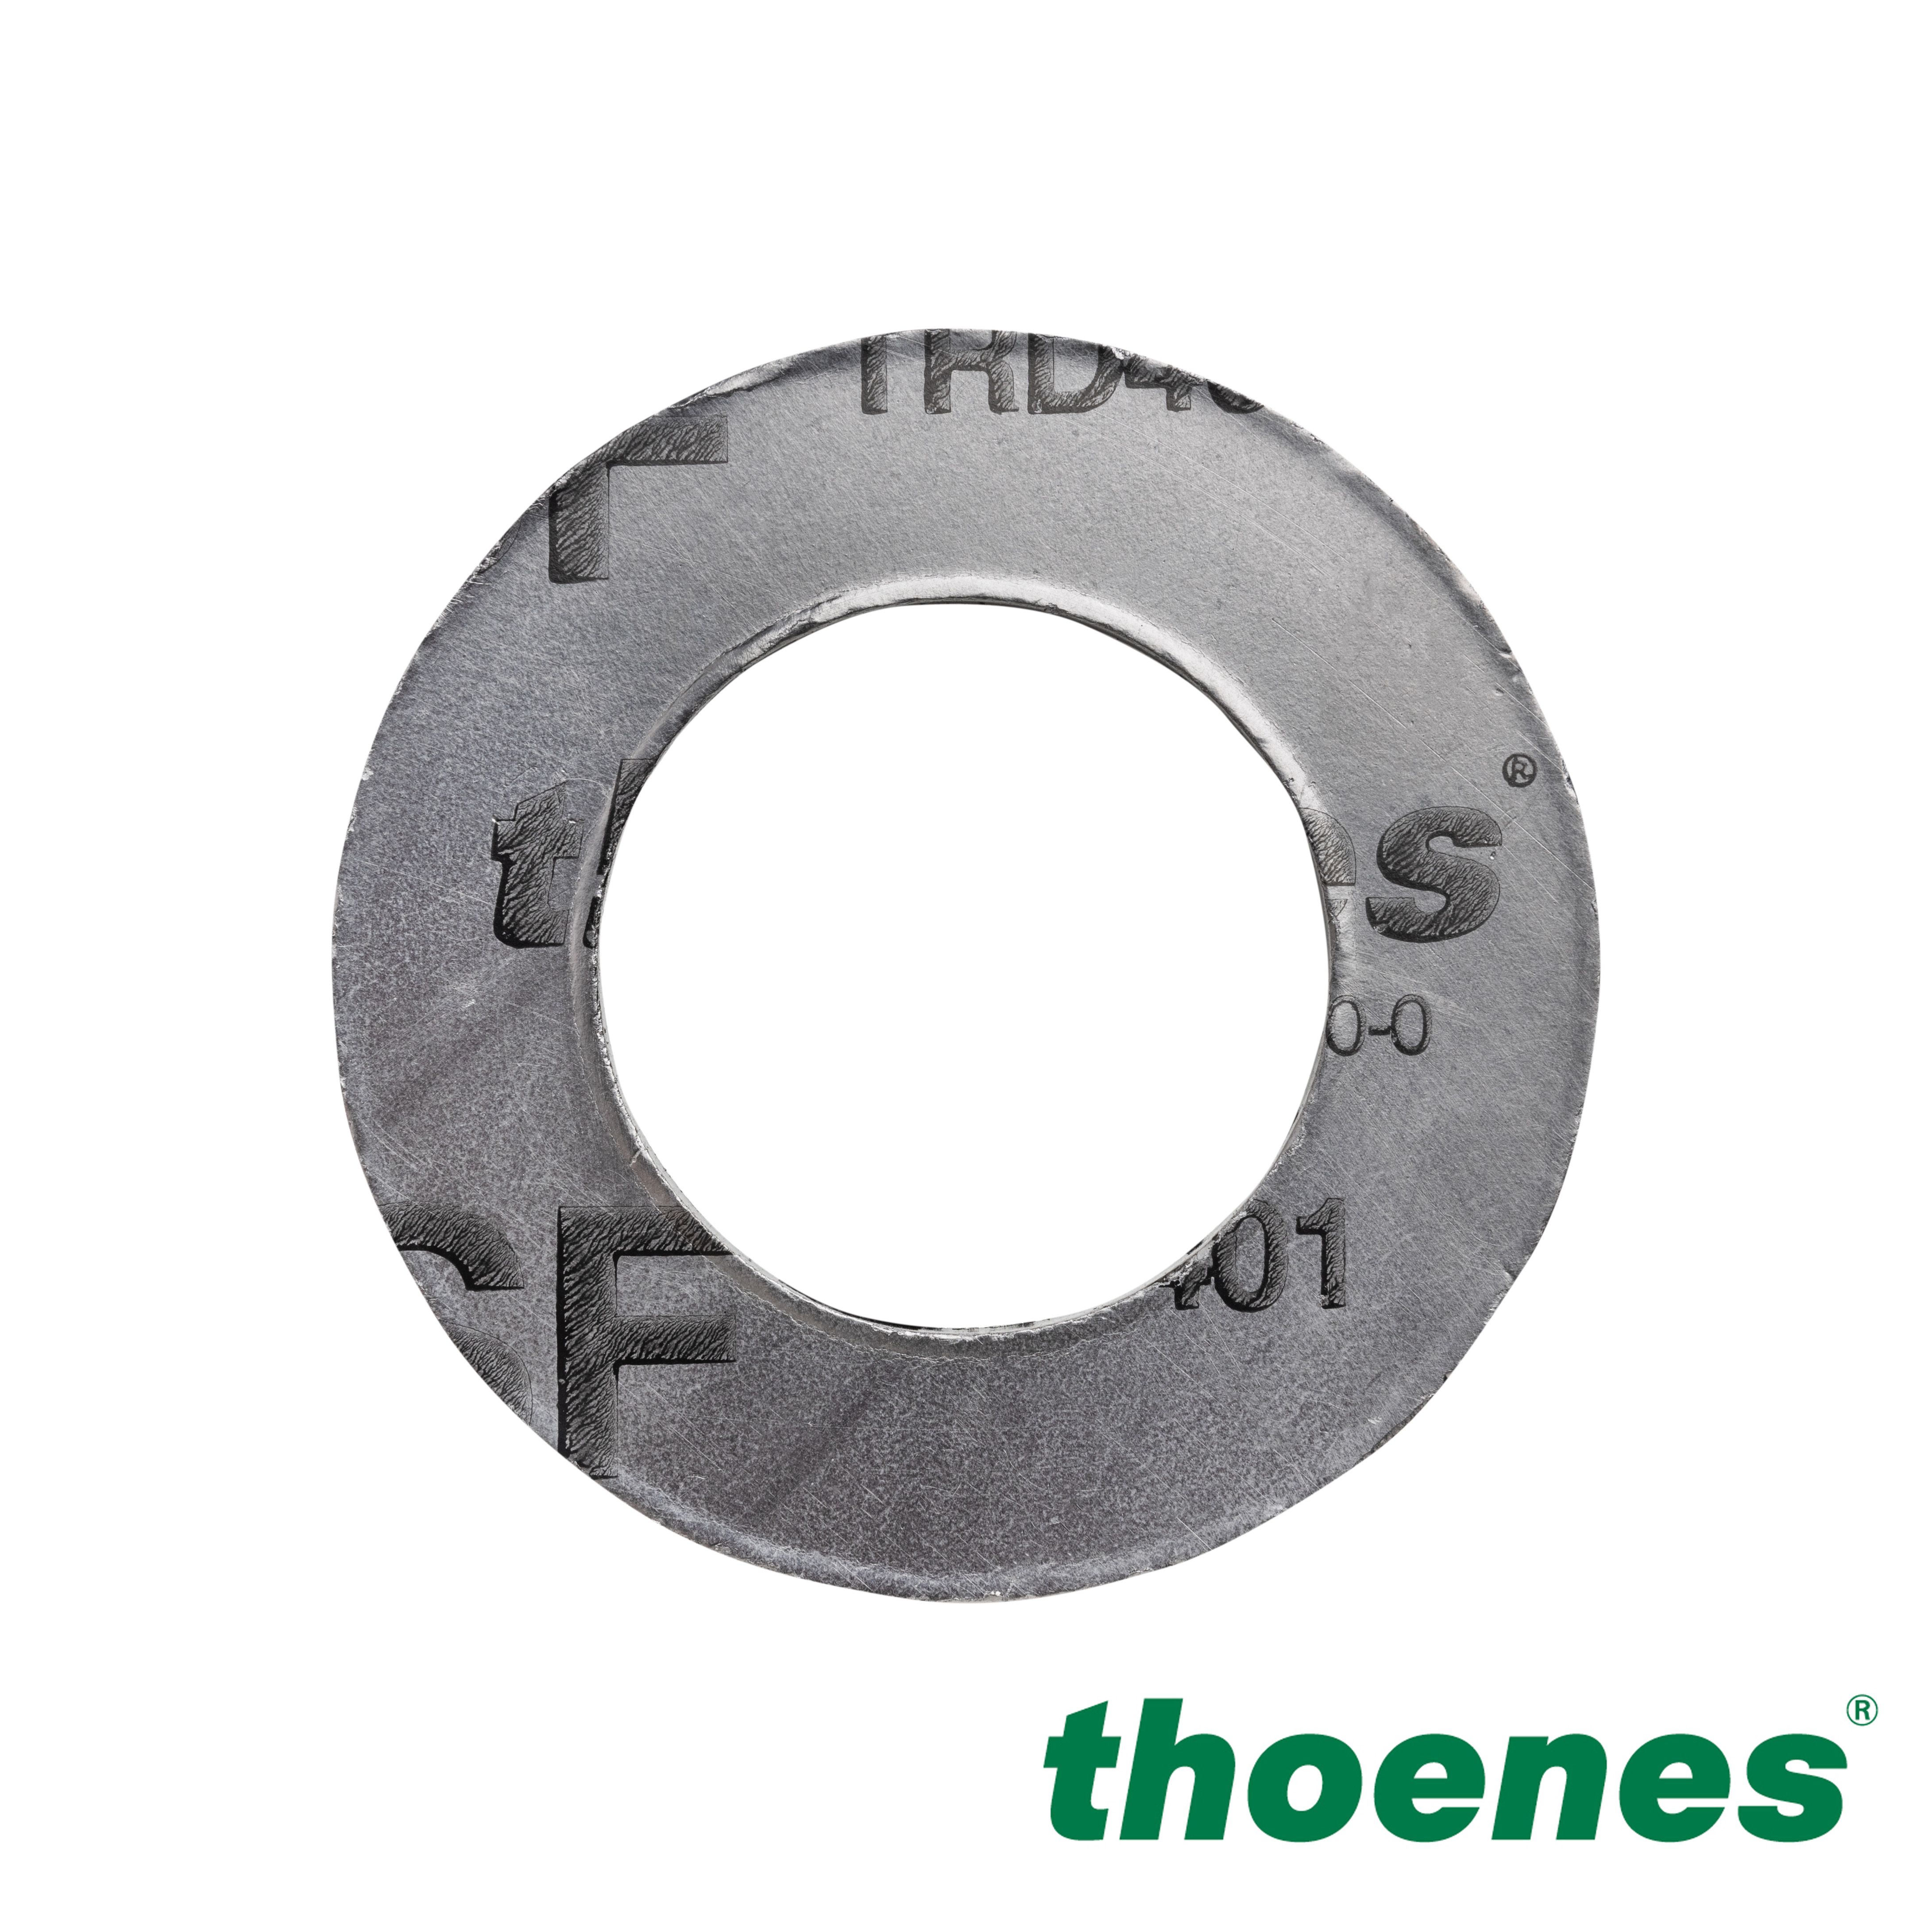 thoenes® SF TRD 401 gasket material